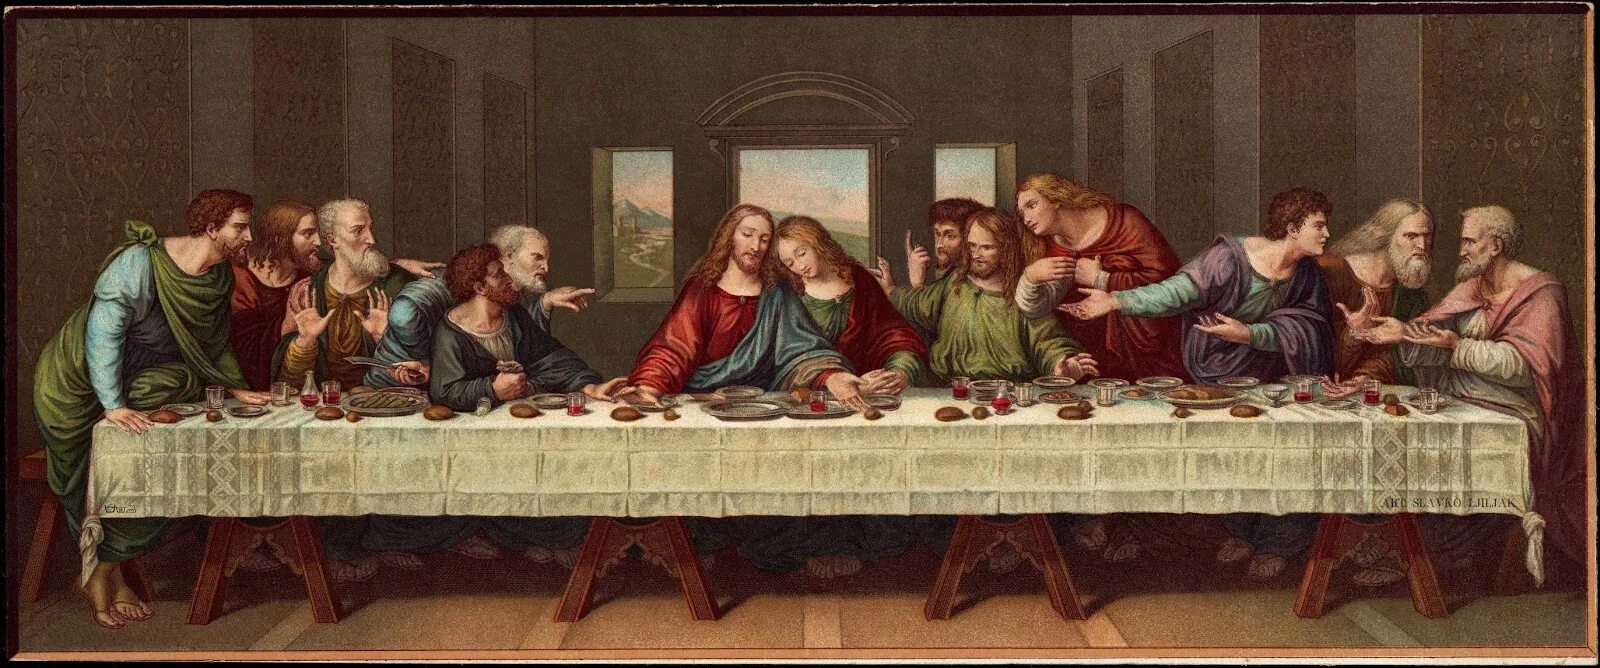 Тайна вечери да винчи. Тайная вечеря да Винчи. Леонардо да Винчи «Тайная вечеря» 1495–1498.. Тайная вечеря картина Леонардо да Винчи. Леонардо дайвинчи Таяна я Вечеля.